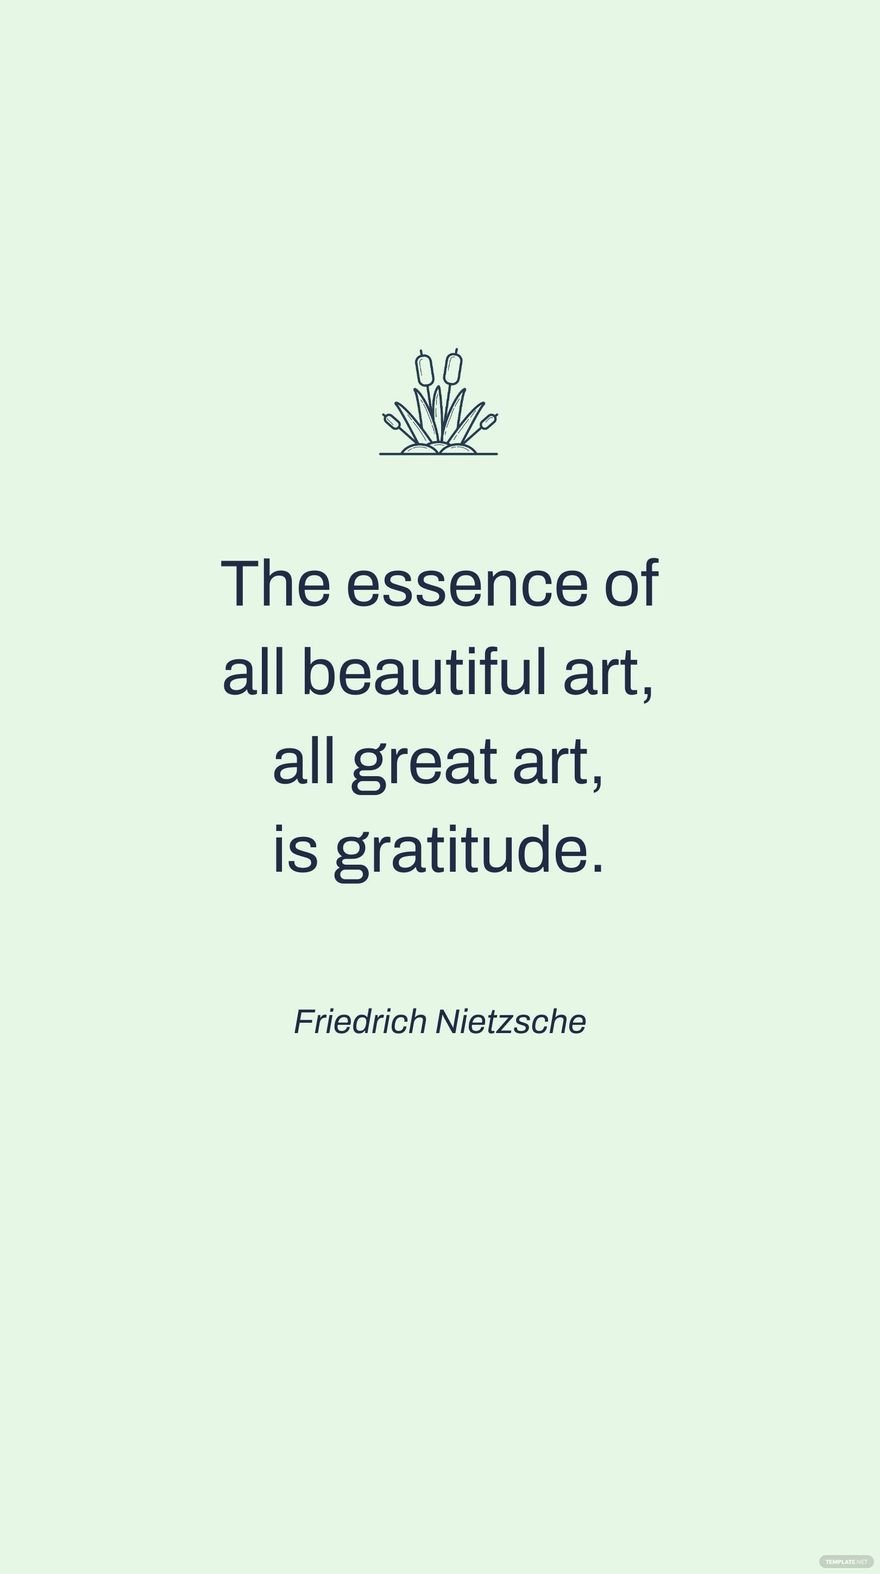 Friedrich Nietzsche - The essence of all beautiful art, all great art, is gratitude.